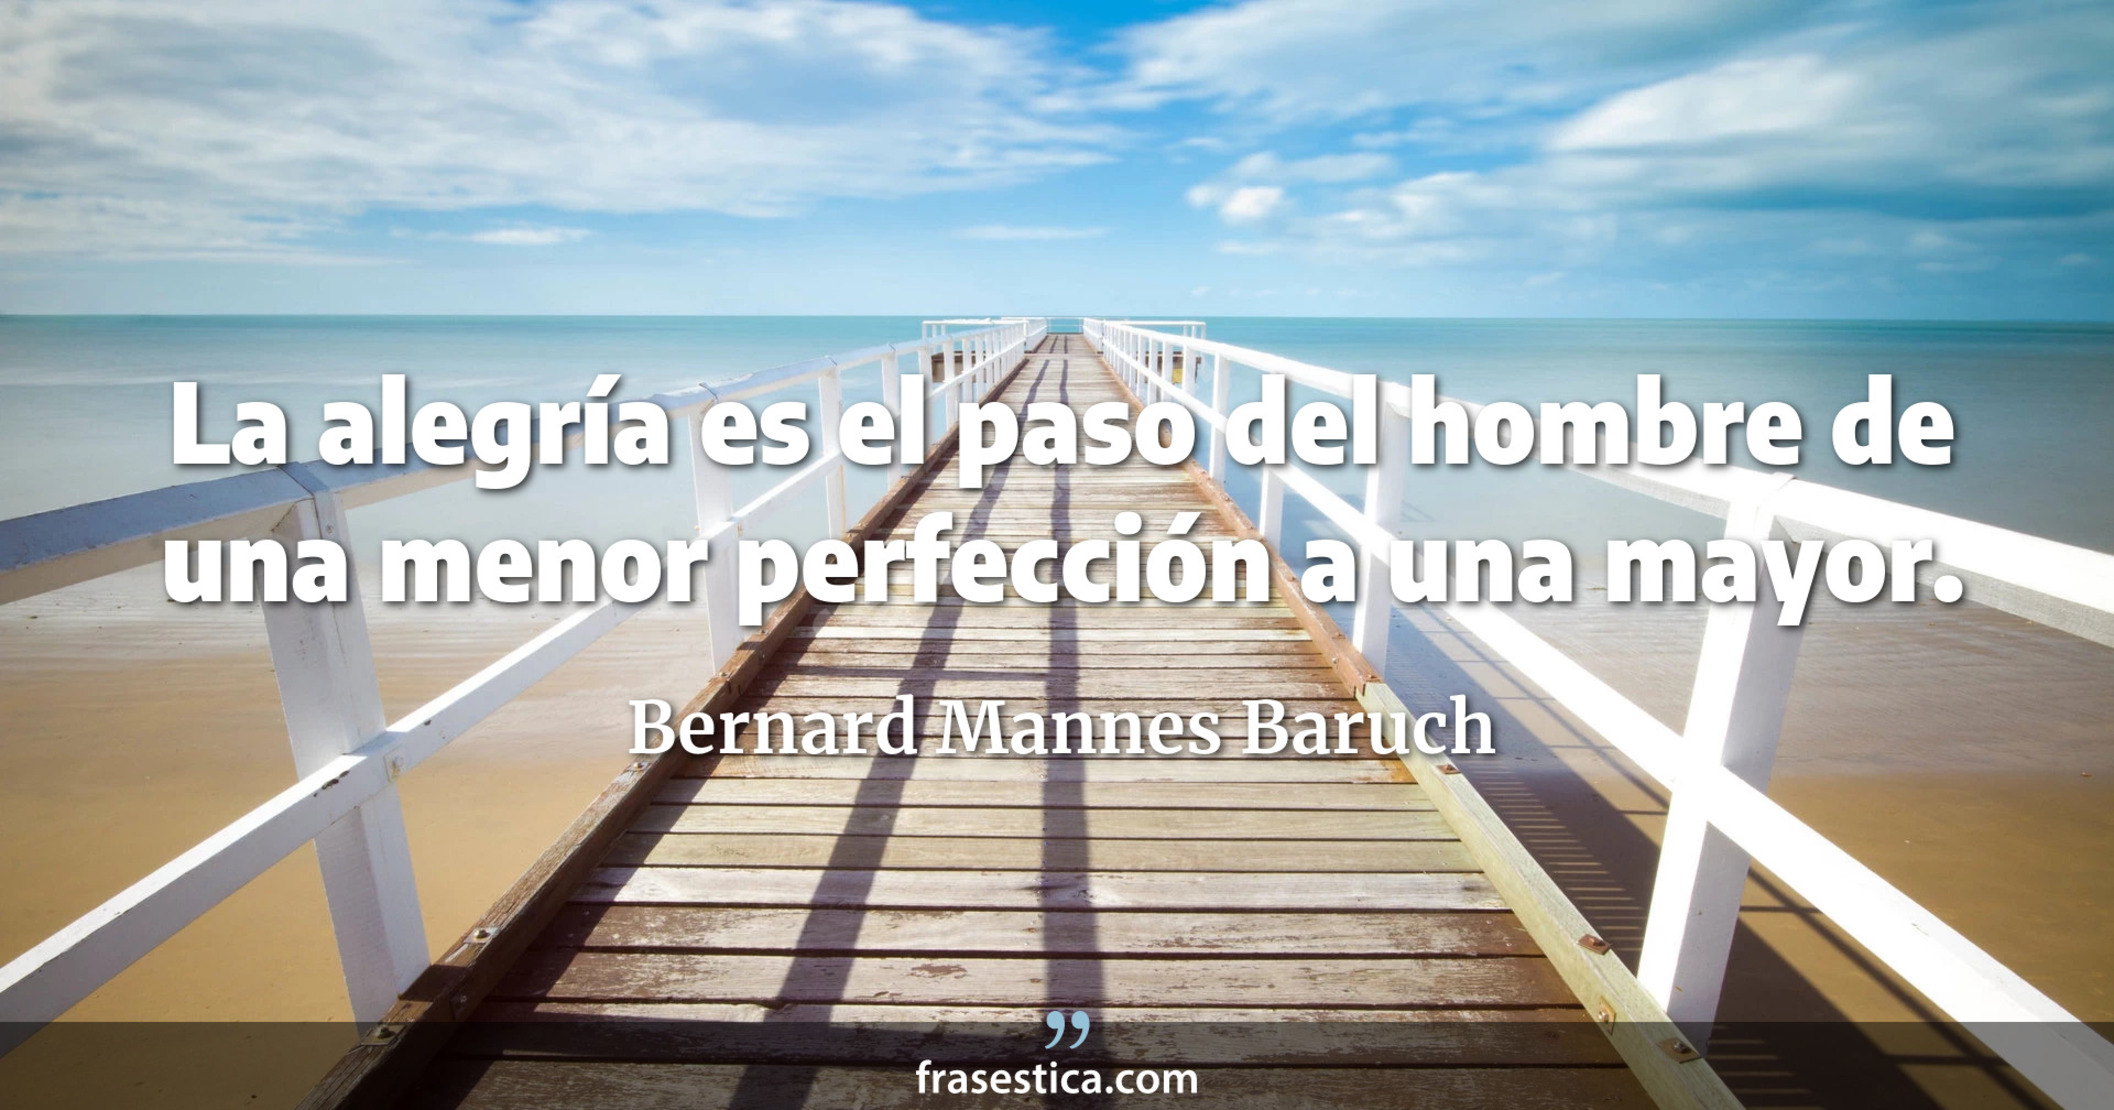 La alegría es el paso del hombre de una menor perfección a una mayor. - Bernard Mannes Baruch